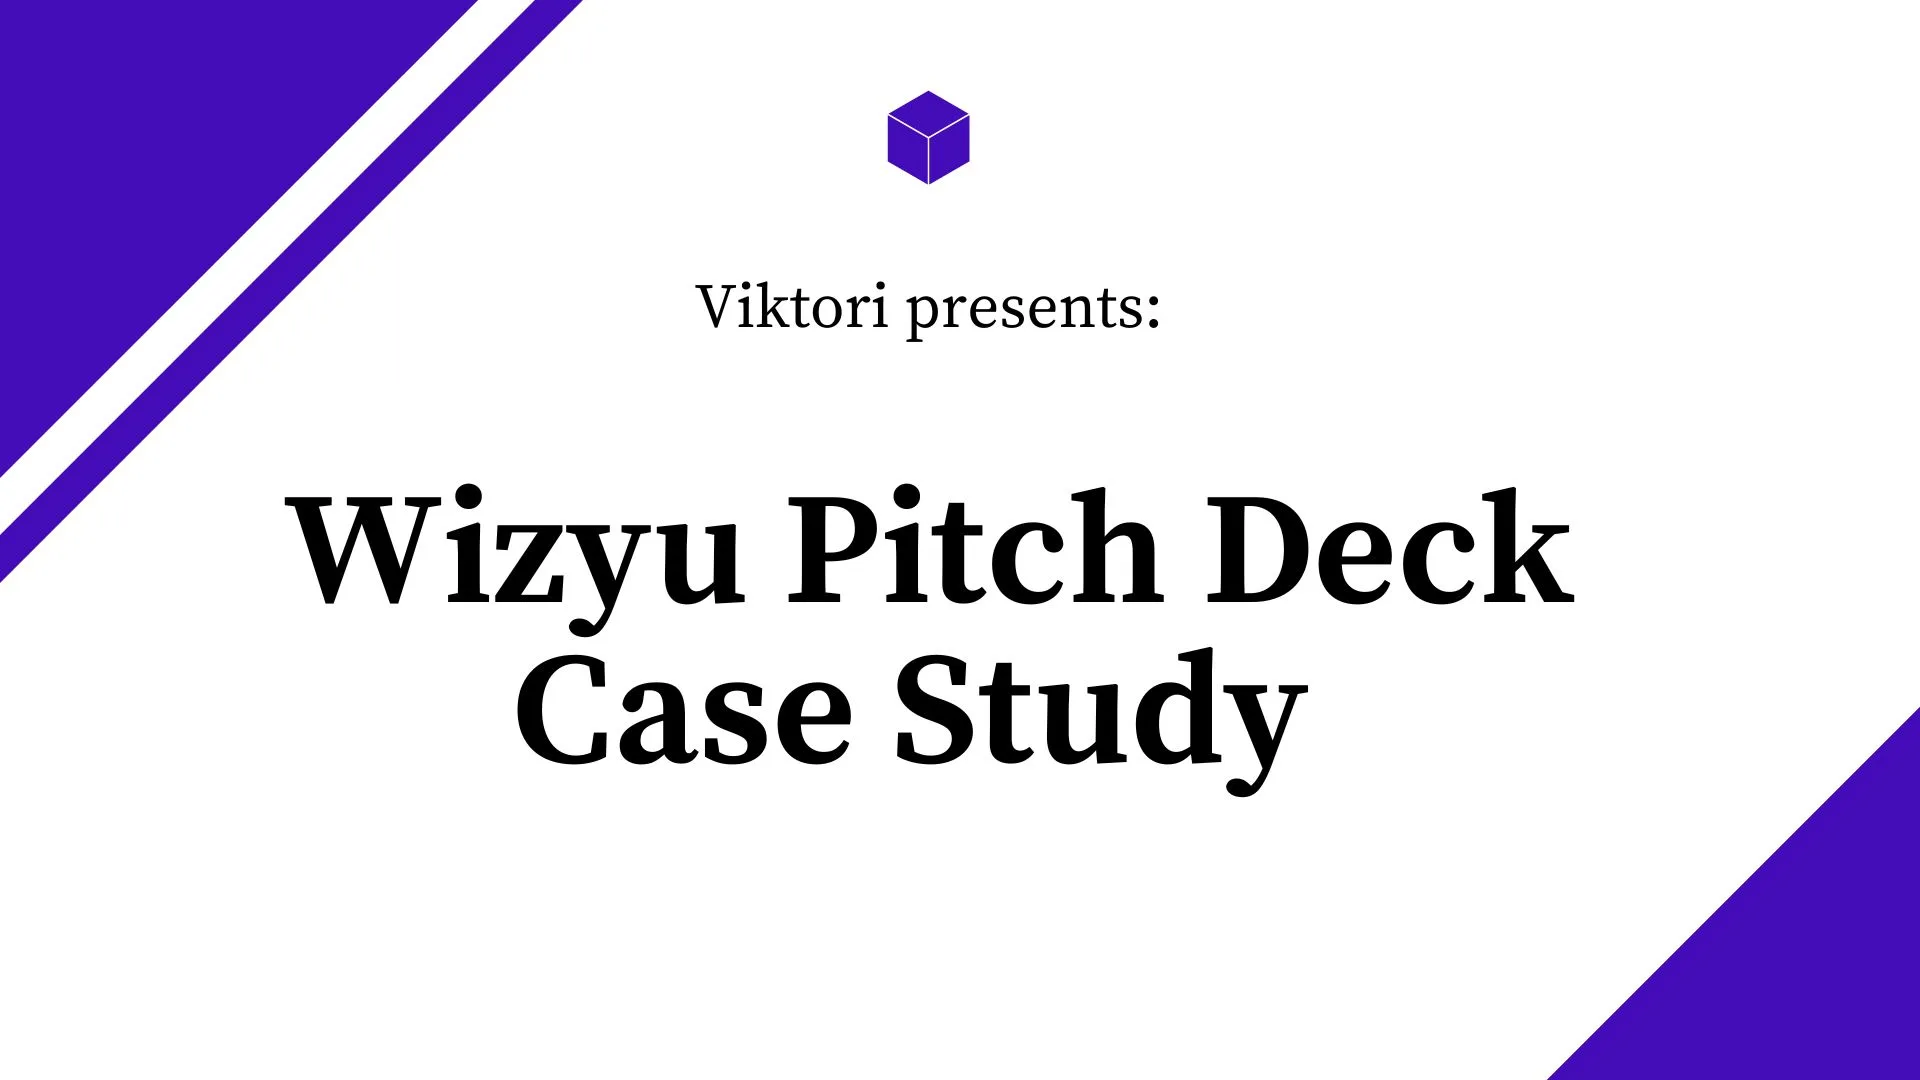 wellness pitch deck case study for wizyu